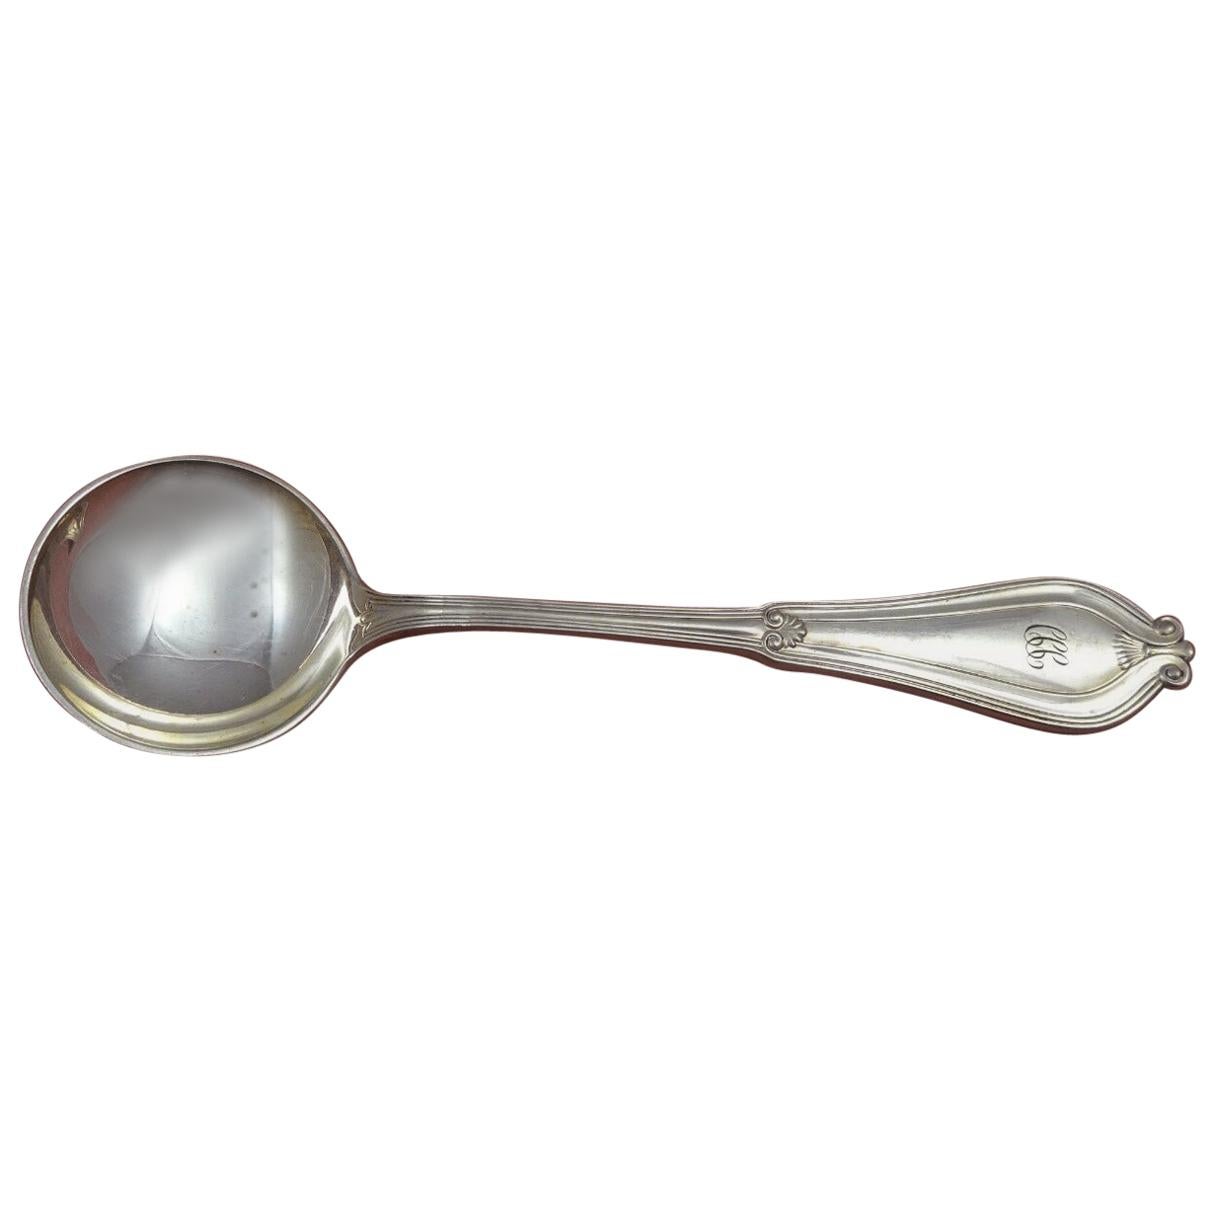 Whittier by Tiffany & Co. Silver Plate Bouillon Soup Spoon